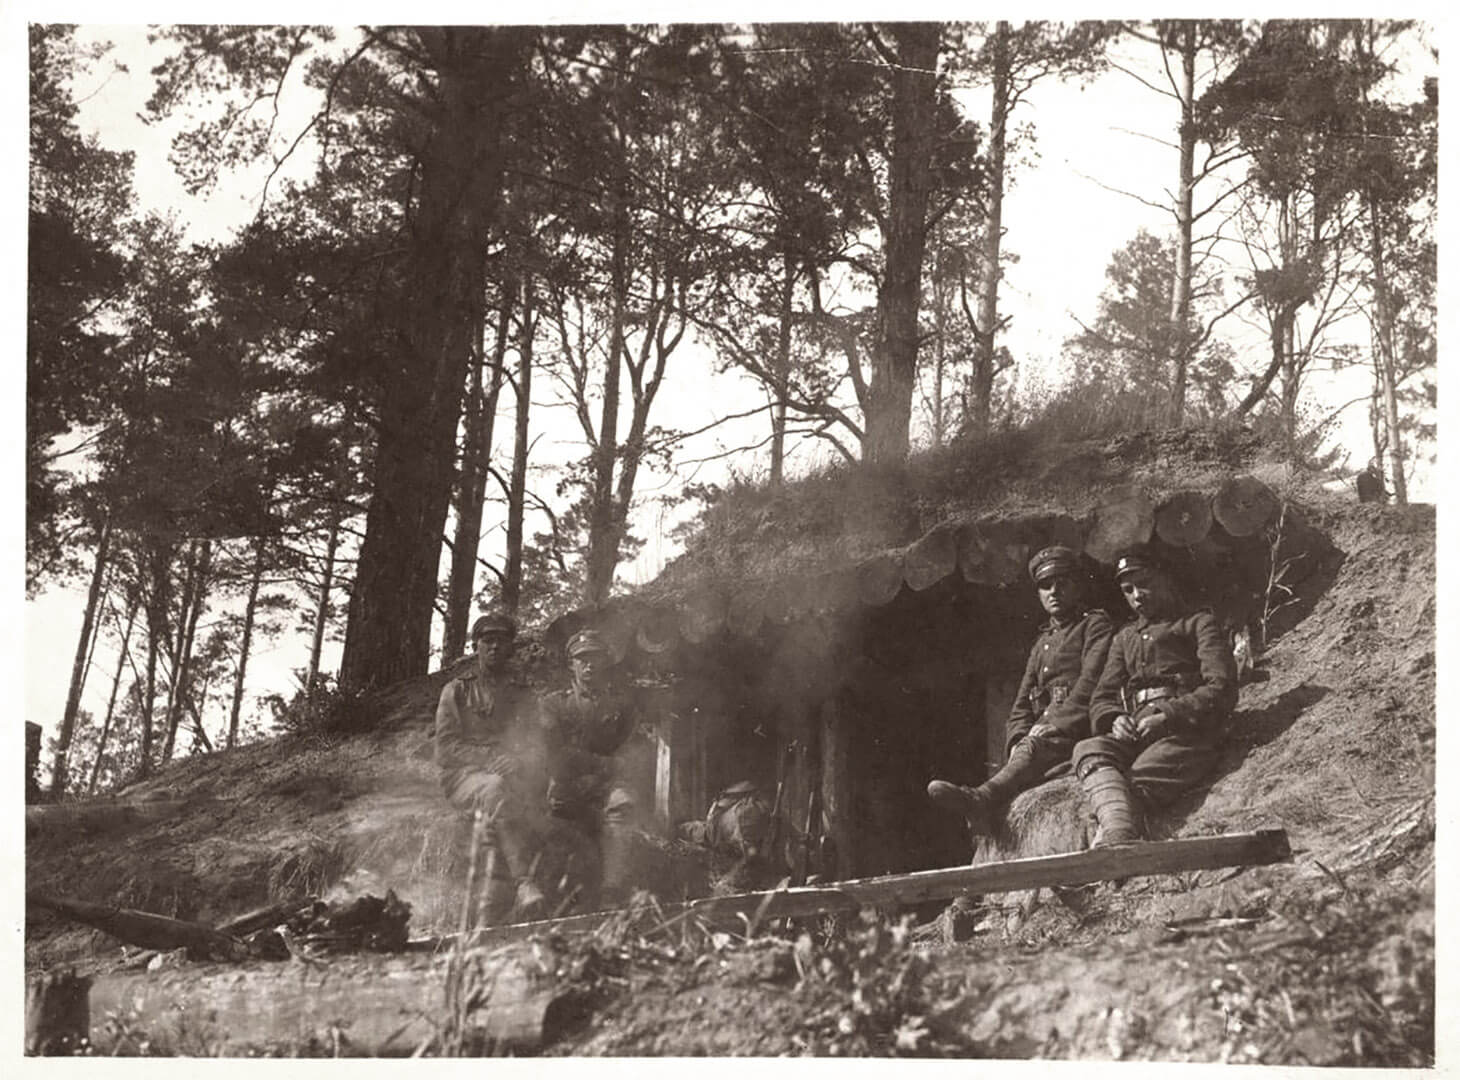 Czarno-białe zdjęcie plenerowe pokazujące czterech żołnierzy pozujących przed umocnieniem w lesie. Zdjęcie wykonane z niskiej perspektywy ukazuje centralnie schron o konstrukcji ziemno-drewnianej. Po lewej i prawej stronie otworu-wejścia siedzi swobodnie na piaszczystym nasypie po dwóch polskich żołnierzy. Mężczyźni patrzą w obiektyw. Za umocnieniem widać iglaste zalesienie.